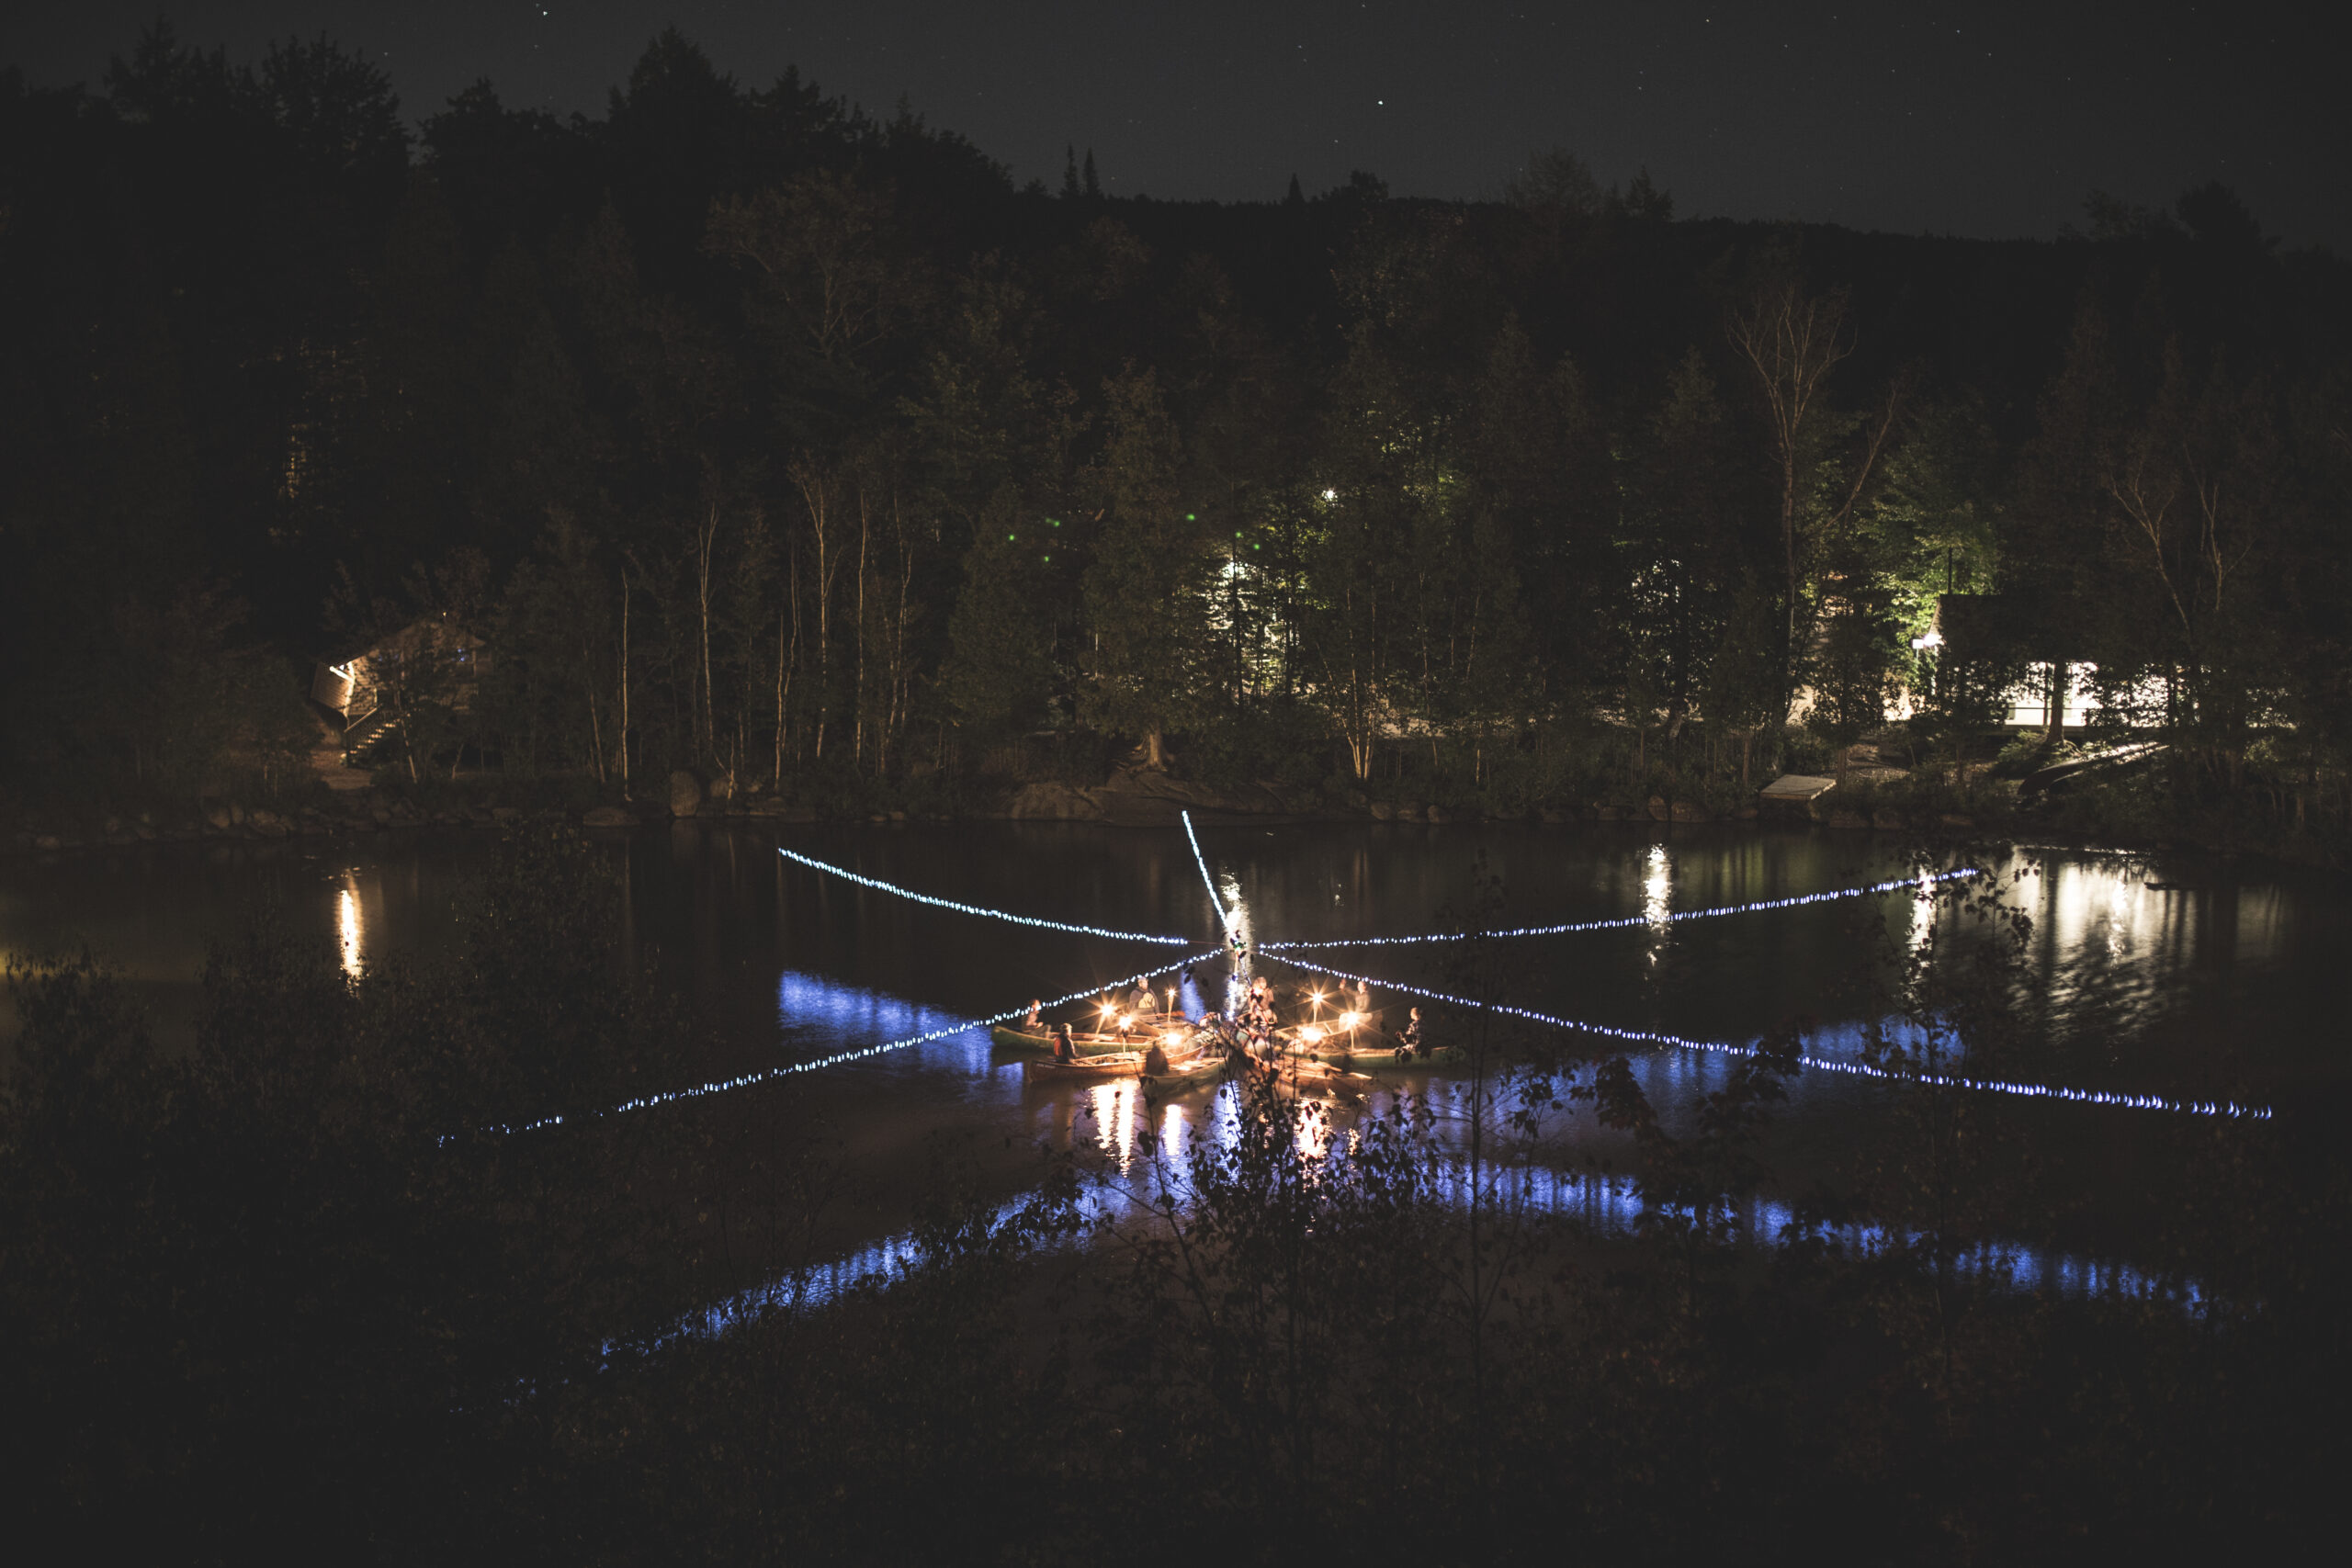 des adeptes du canoe sont rassemblé de nuit sur leurs canots formant une étoile et chaque personne ayant une torche sur son canot